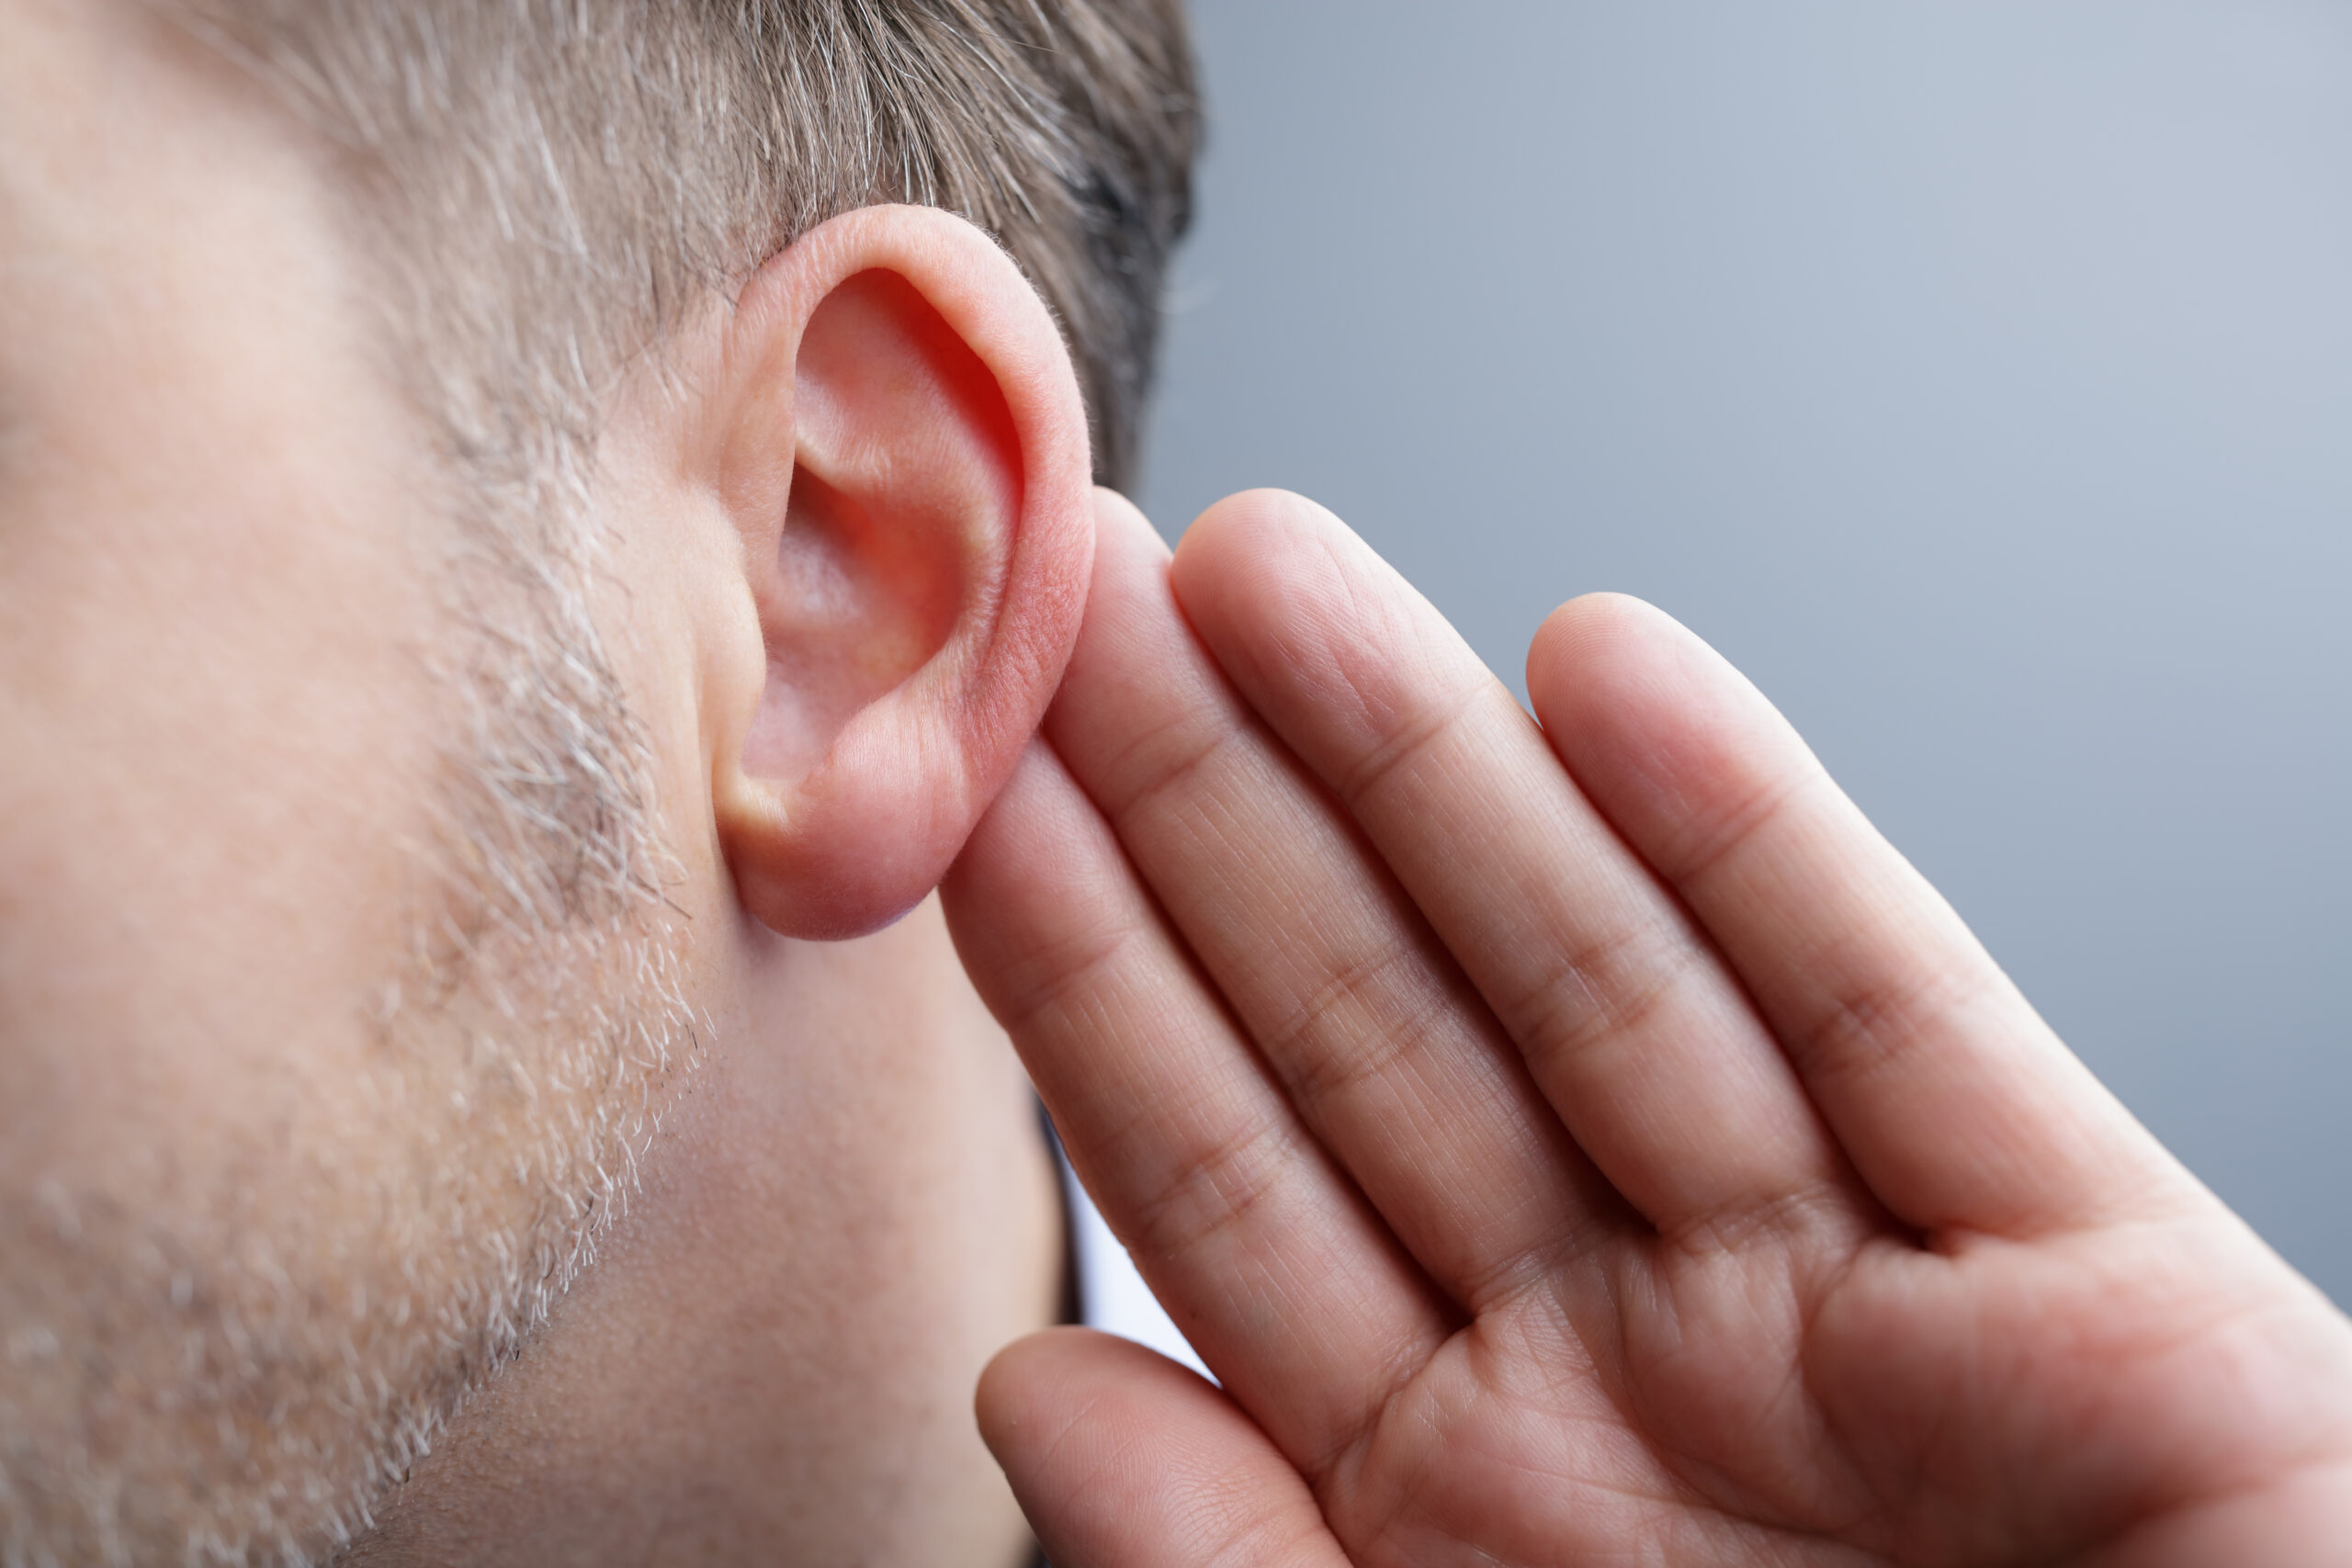 15 signos perdida auditiva